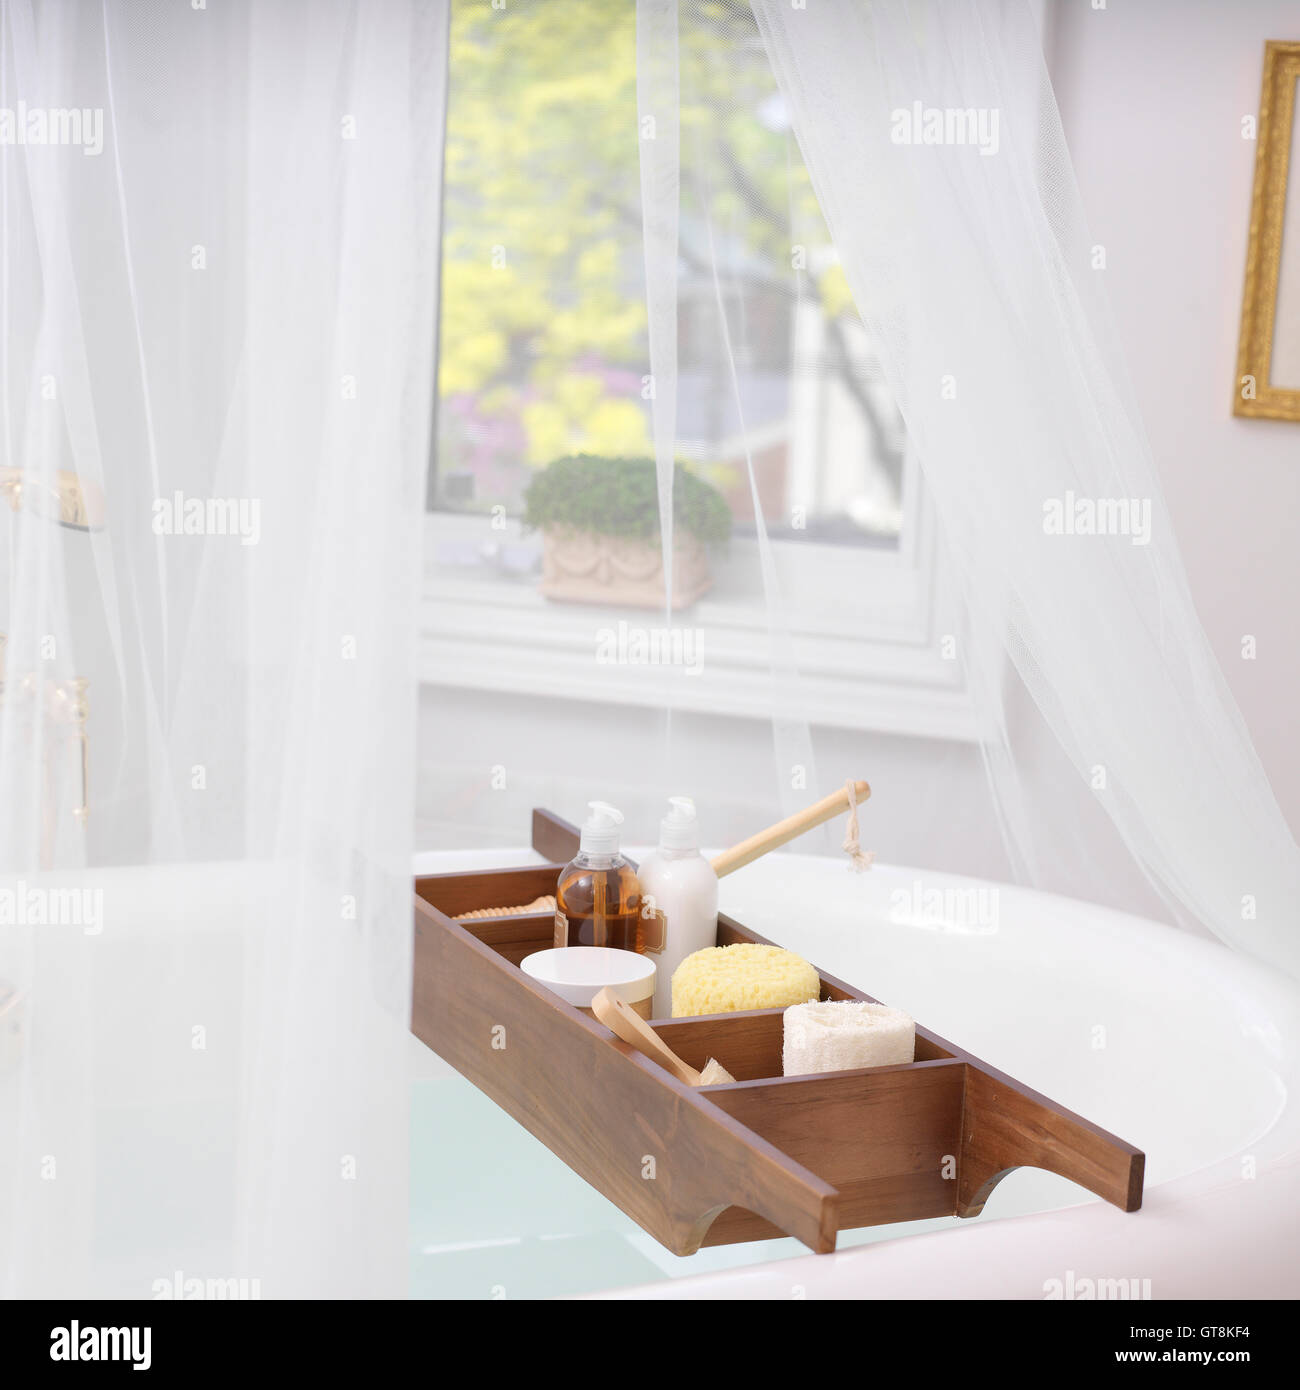 Bath Caddy on Bathtub Filled with Bath Items Stock Photo